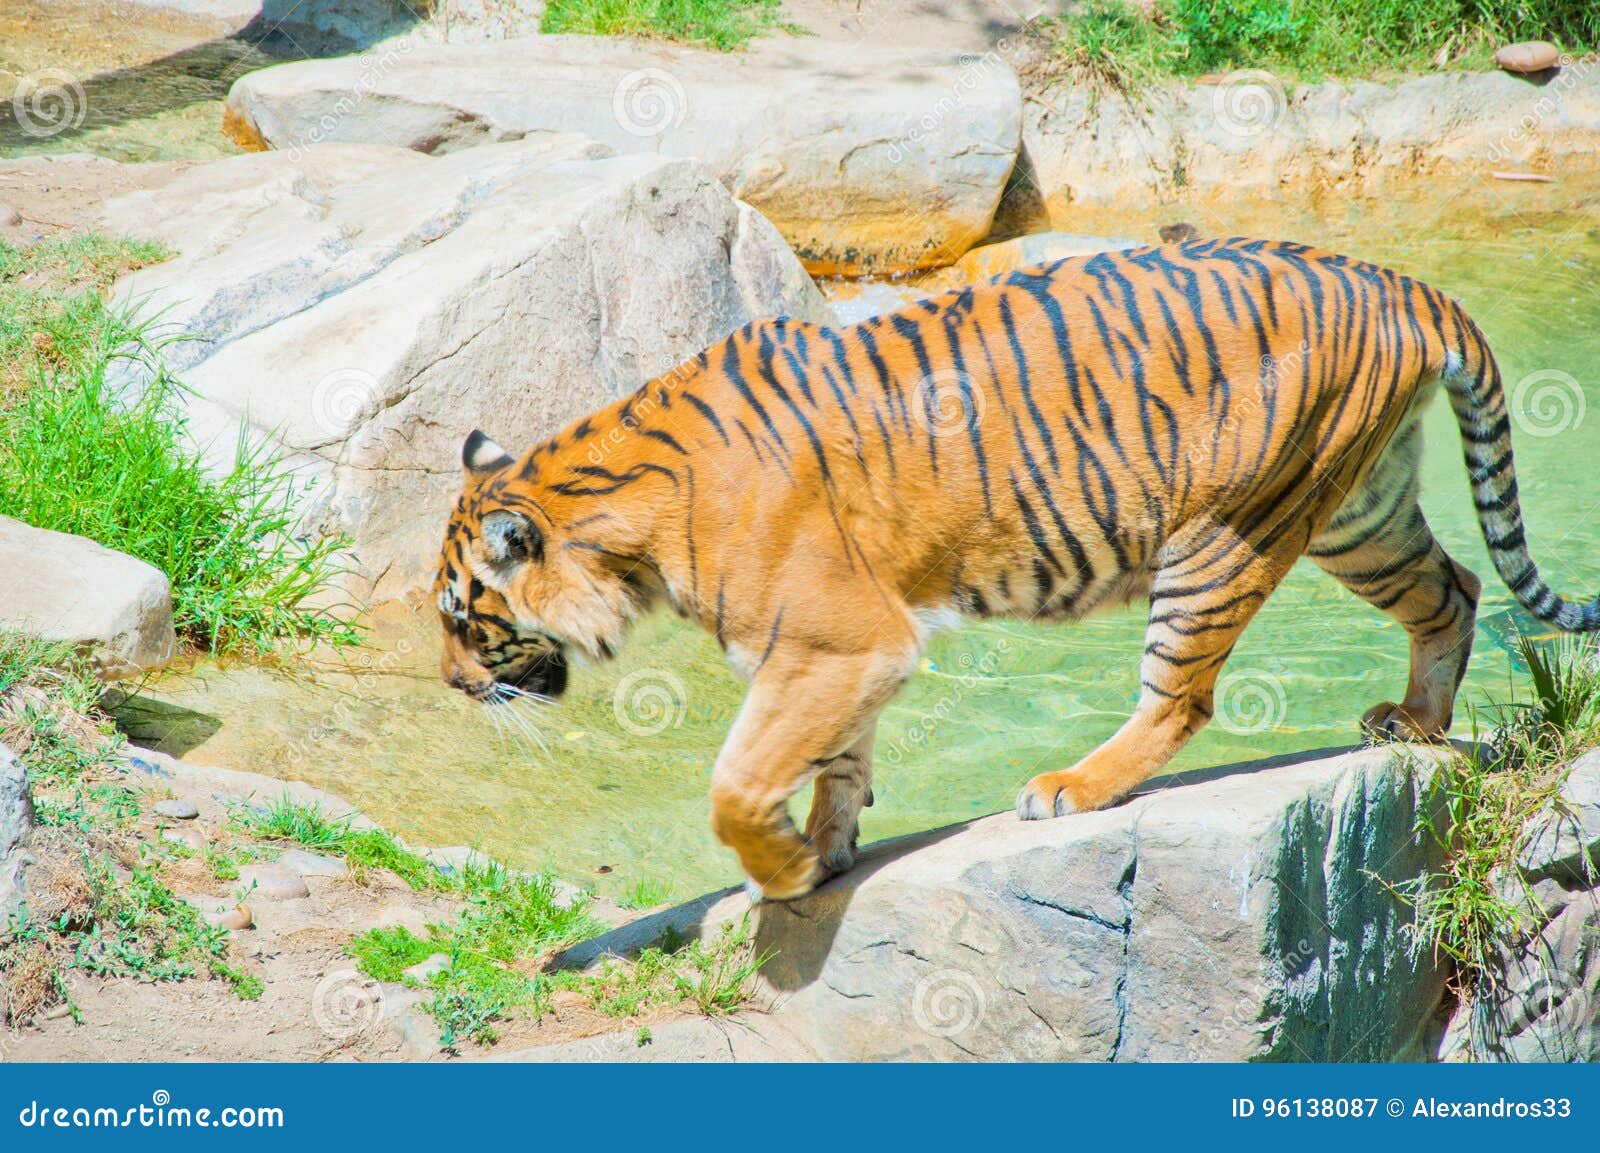 Royal Bengal tiger at zoo of Los Angeles